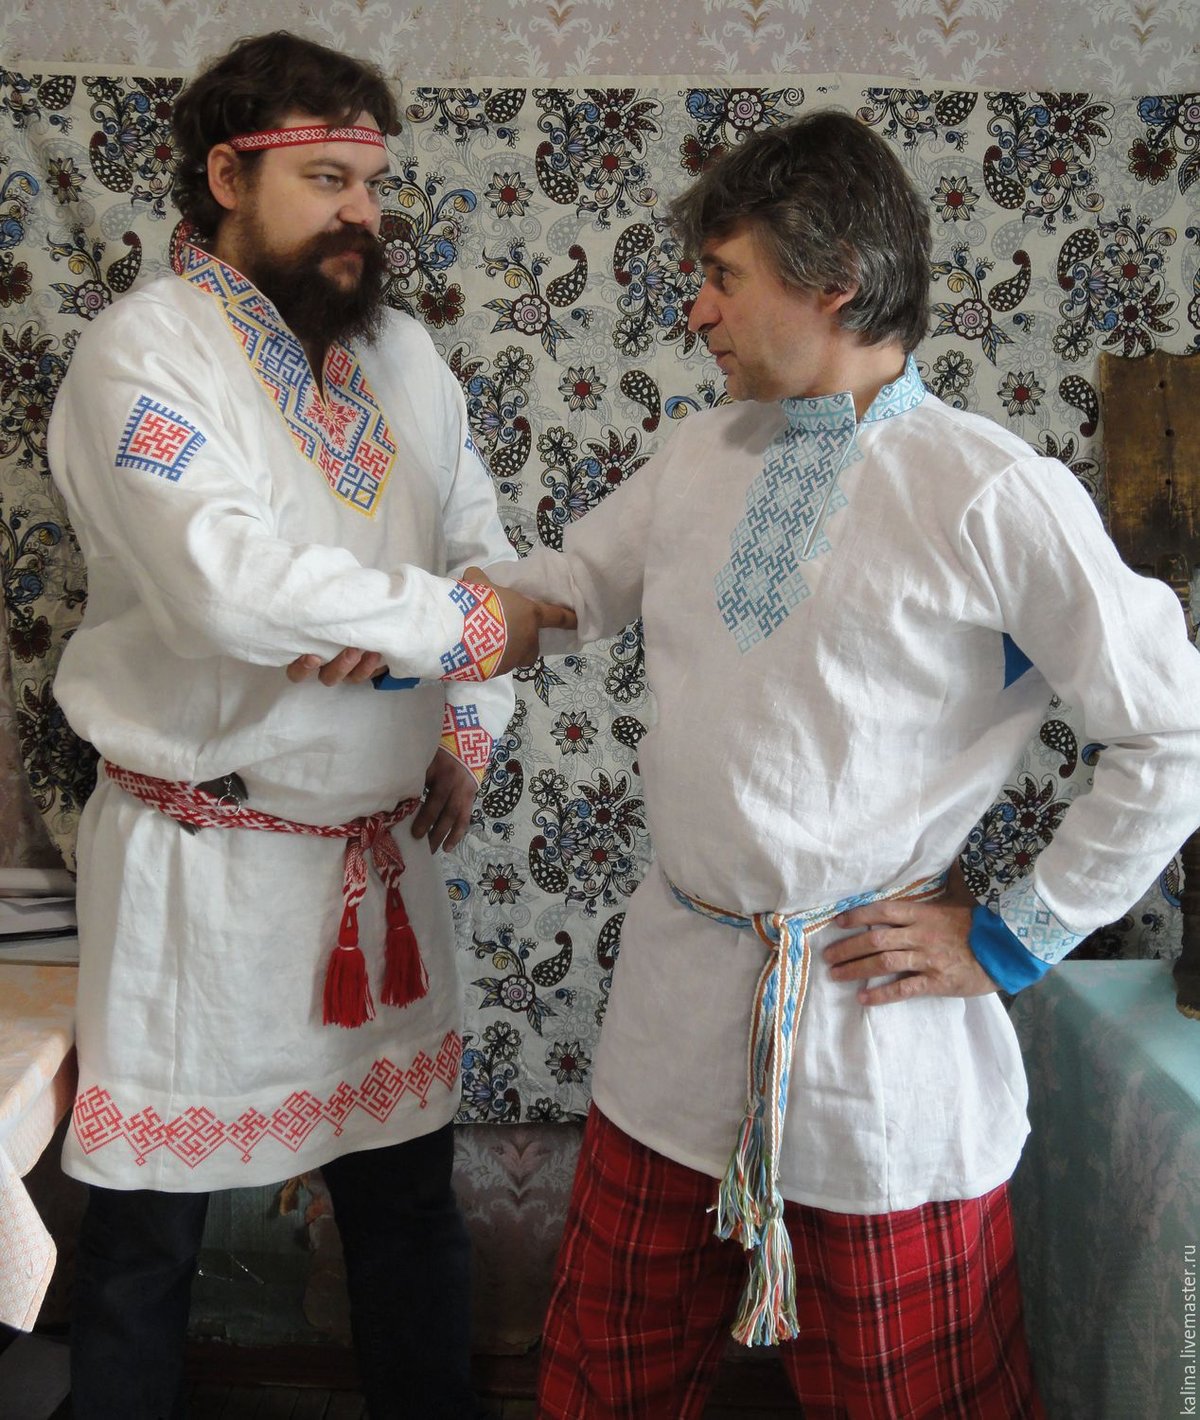 Почему украинцы носят вышиванки, а русские не носят косоворотки